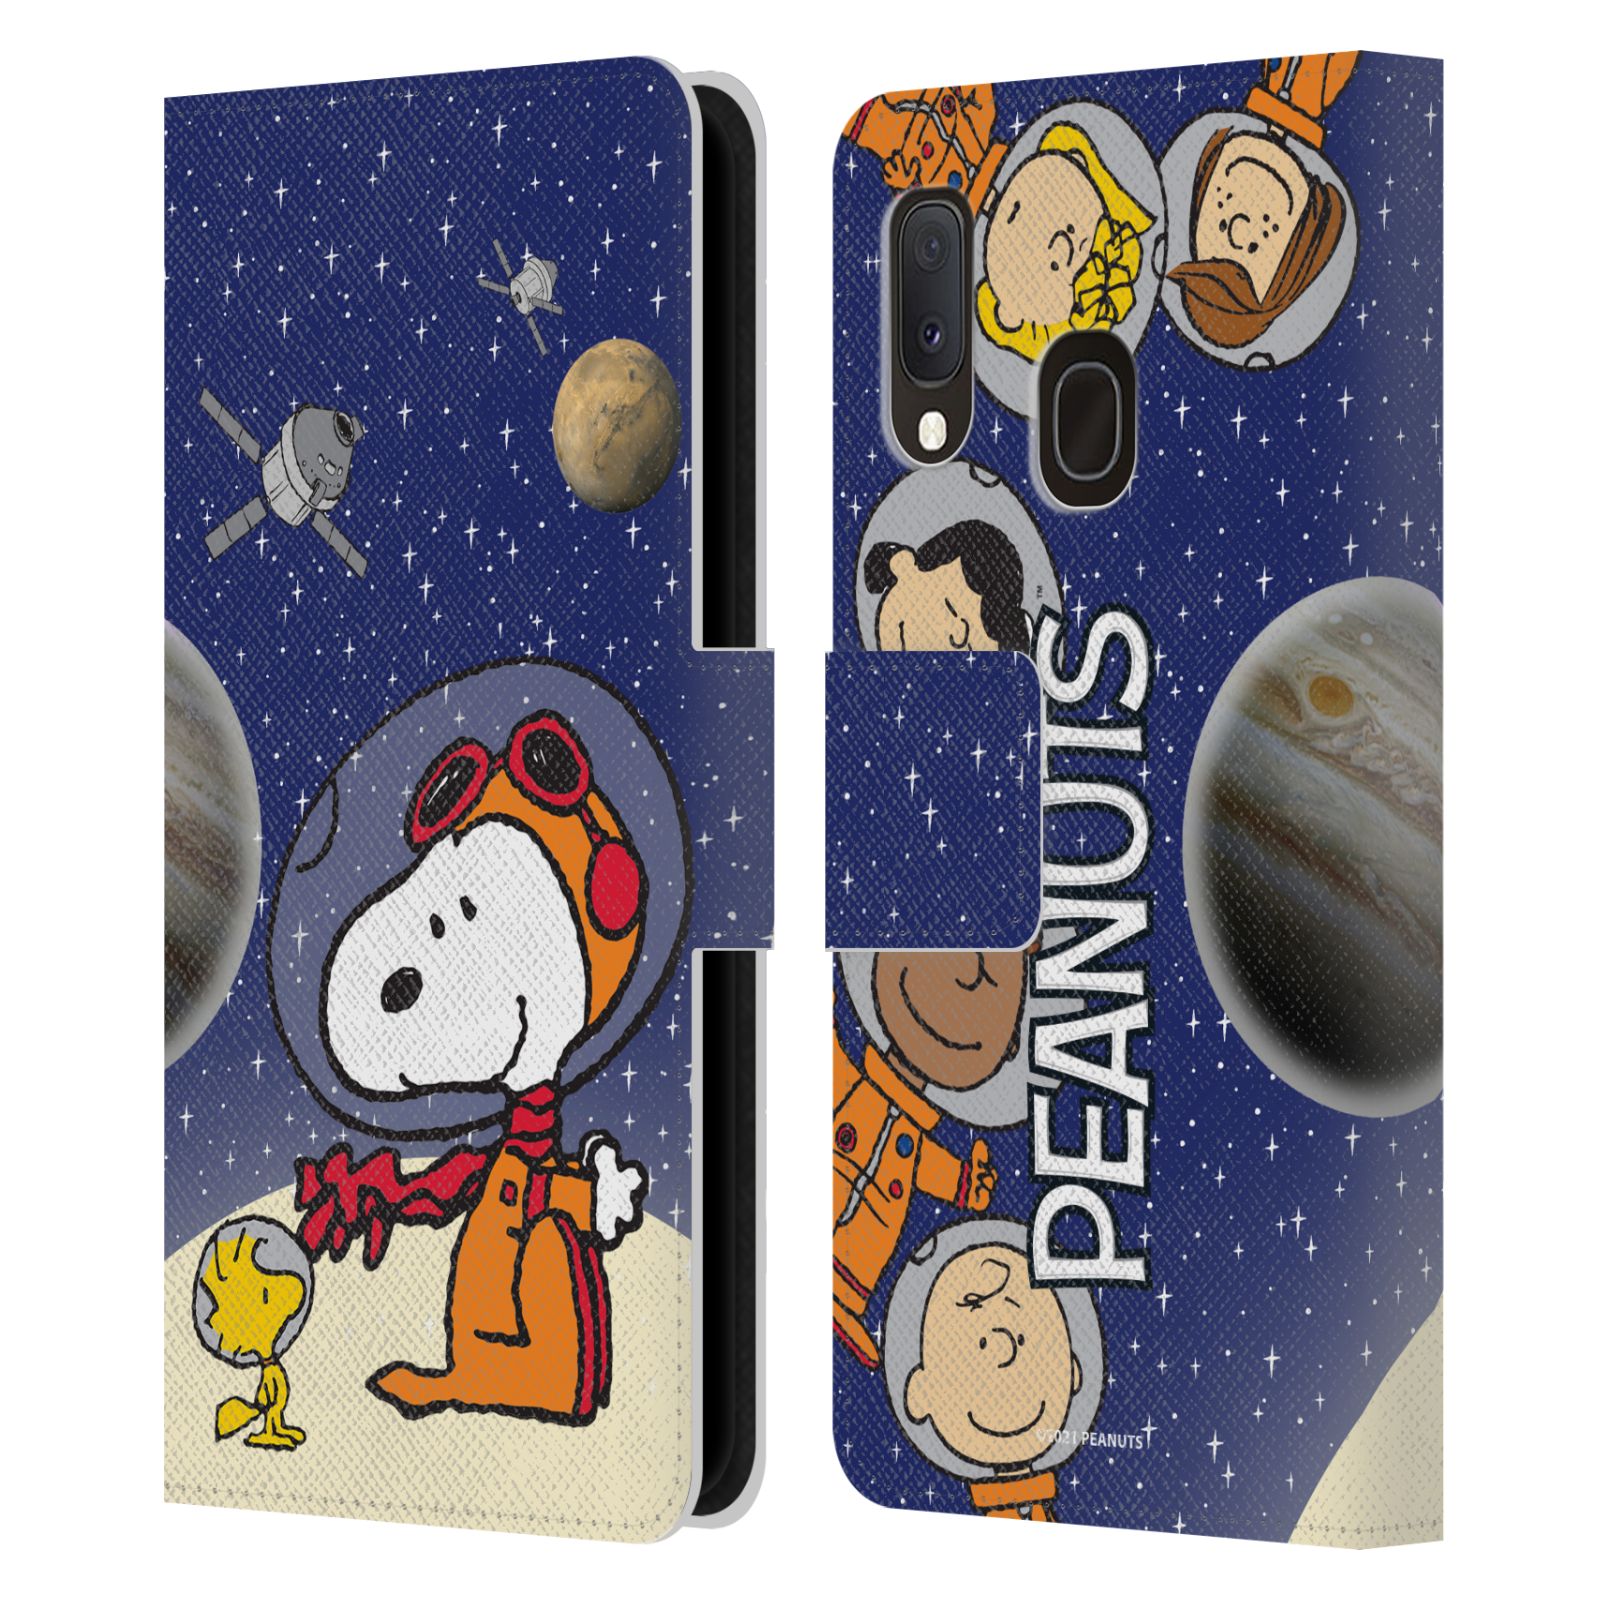 Pouzdro na mobil Samsung Galaxy A20E - HEAD CASE - Peanuts Snoopy ve vesmíru 2